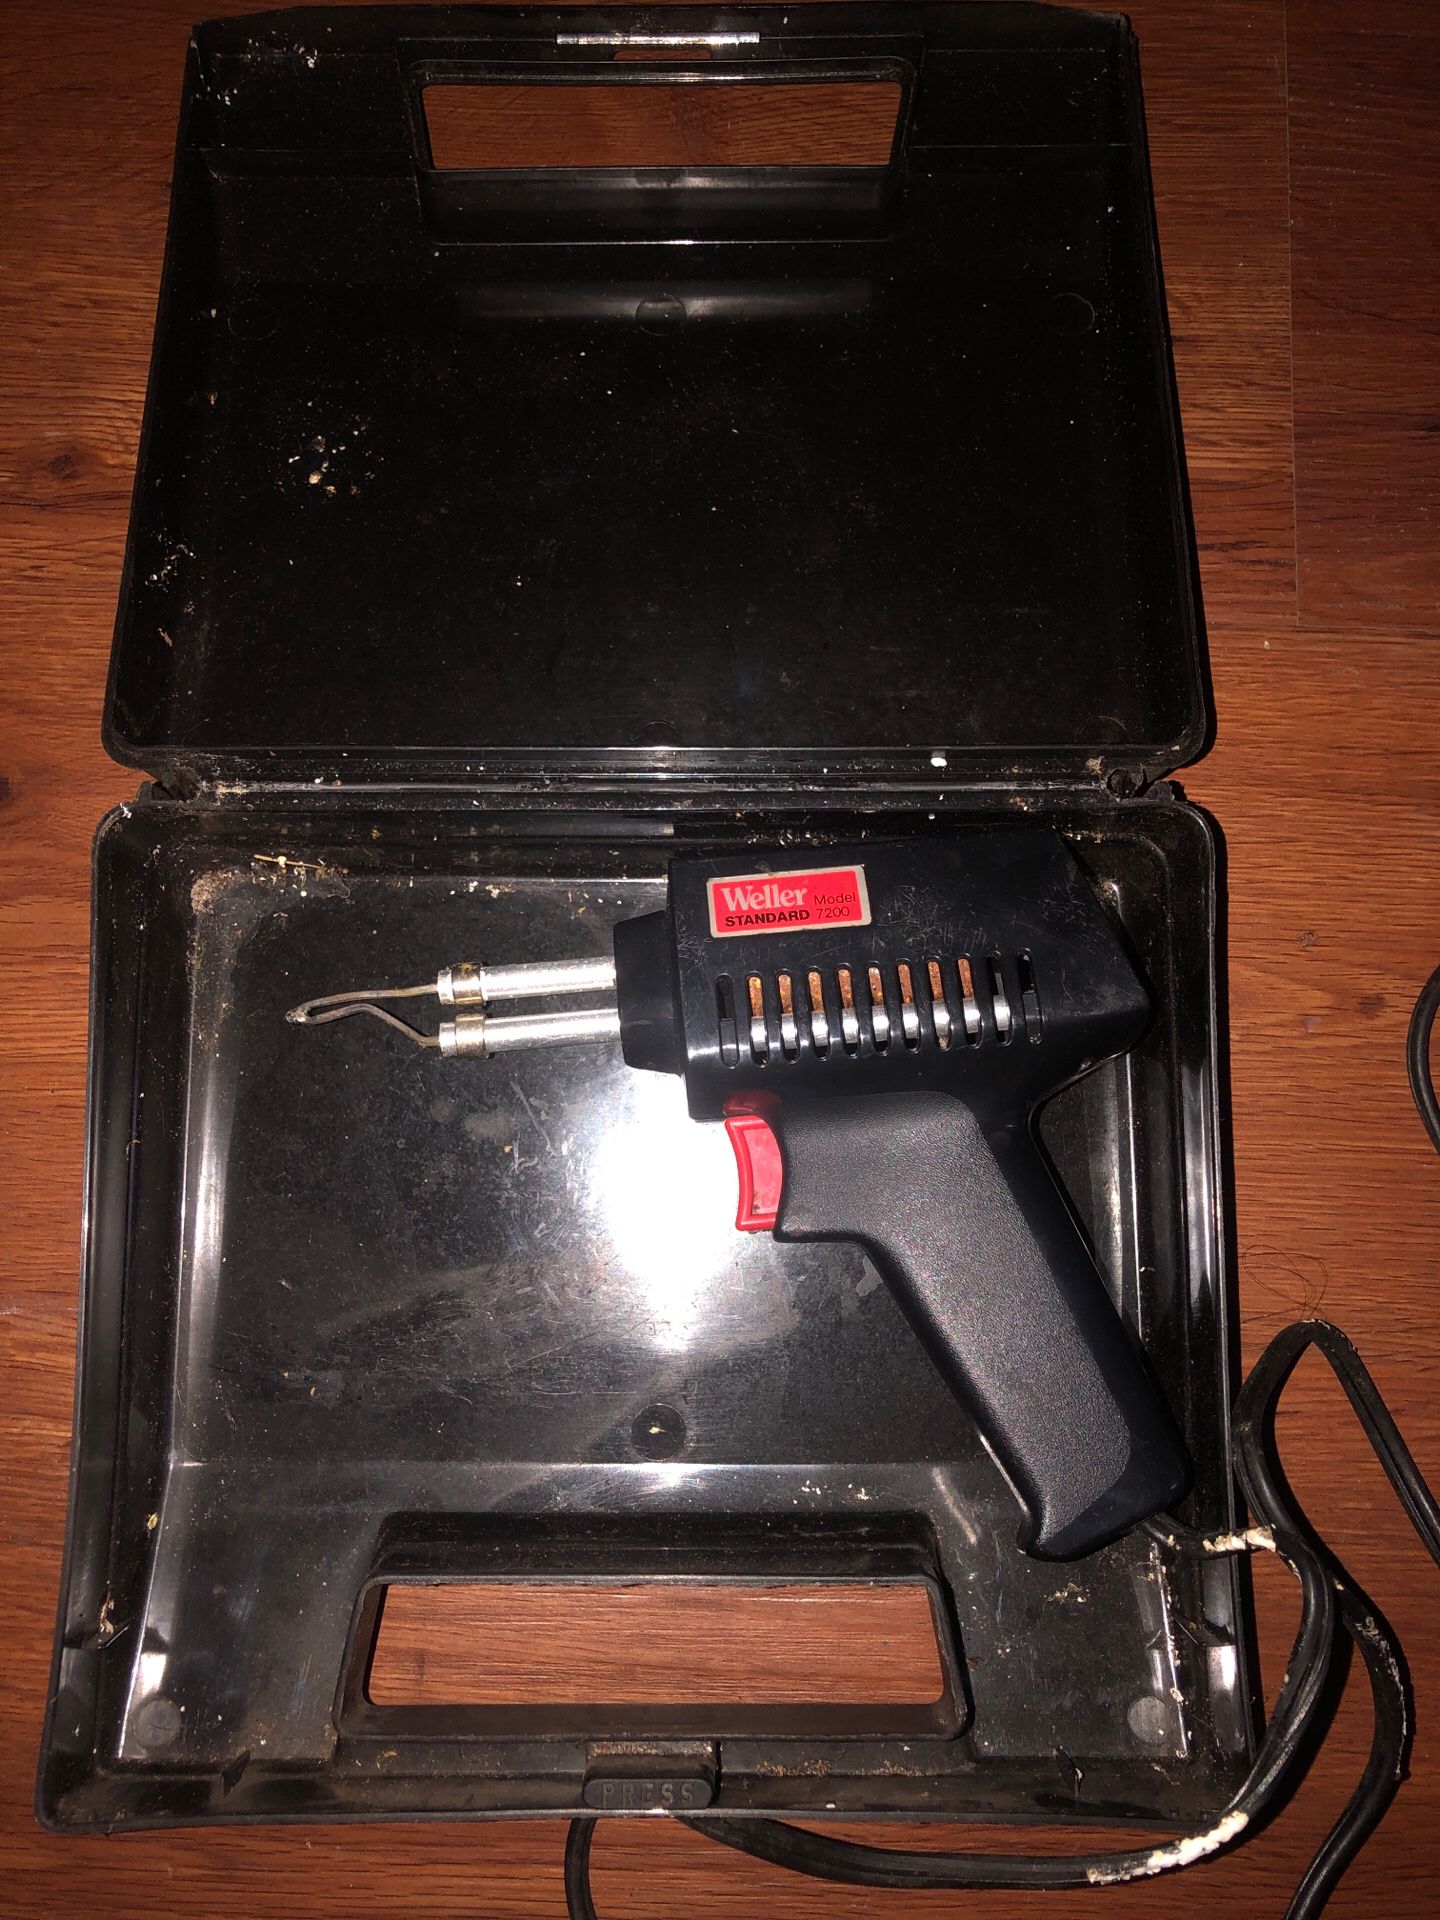 Seller professional soldering gun kit burner